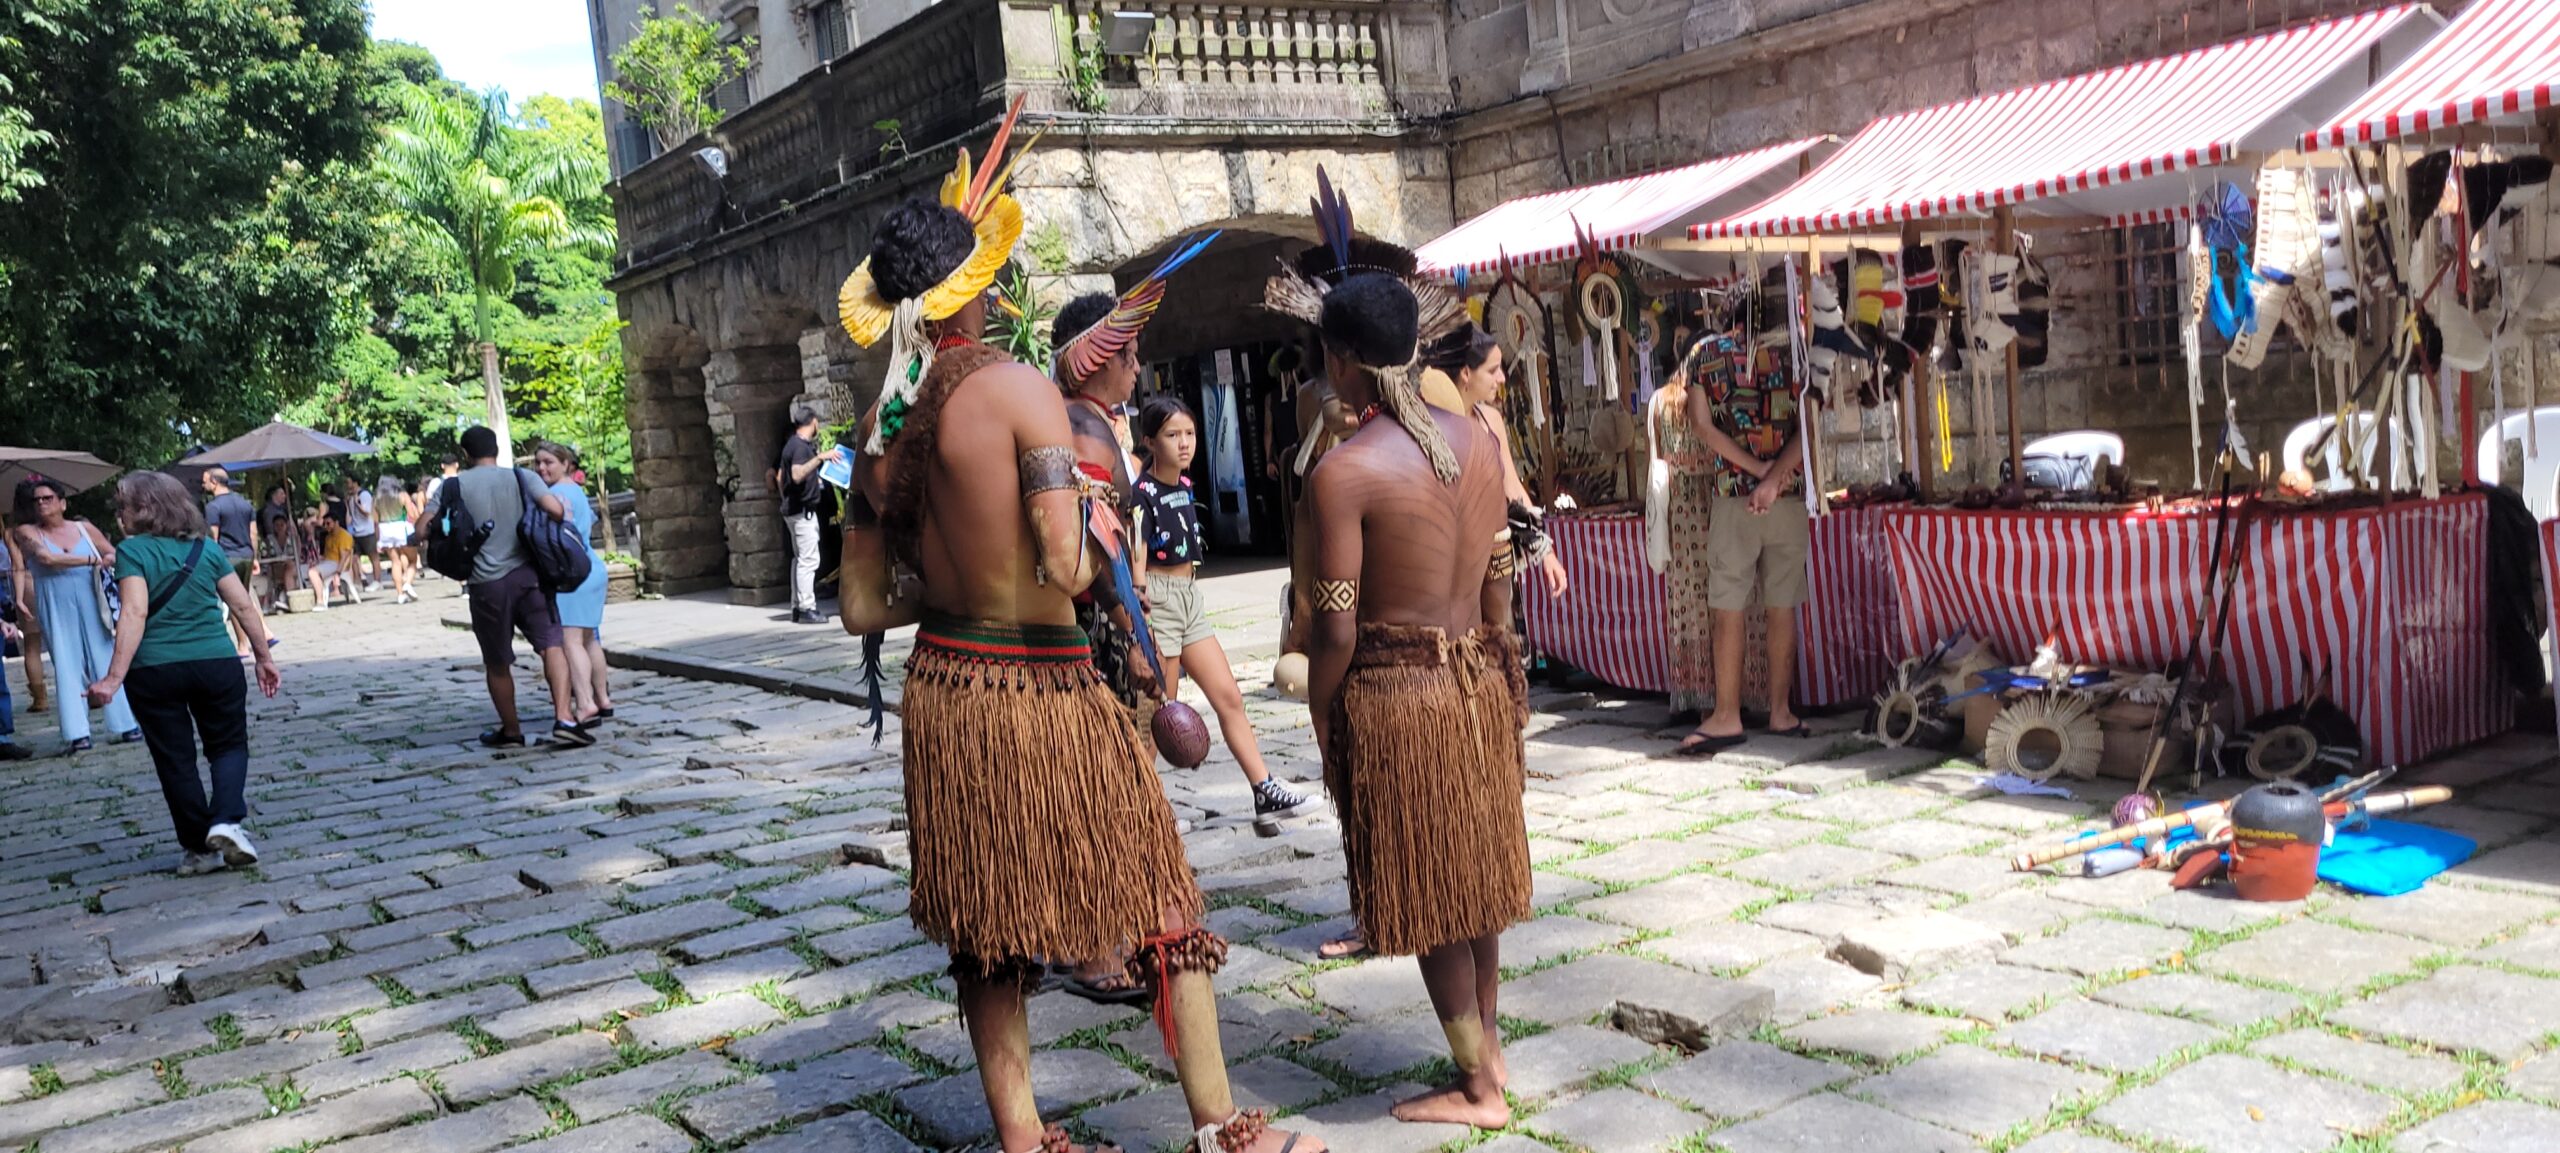 Tradición viva: la Feria de Río de Janeiro rinde homenaje a la cultura indígena